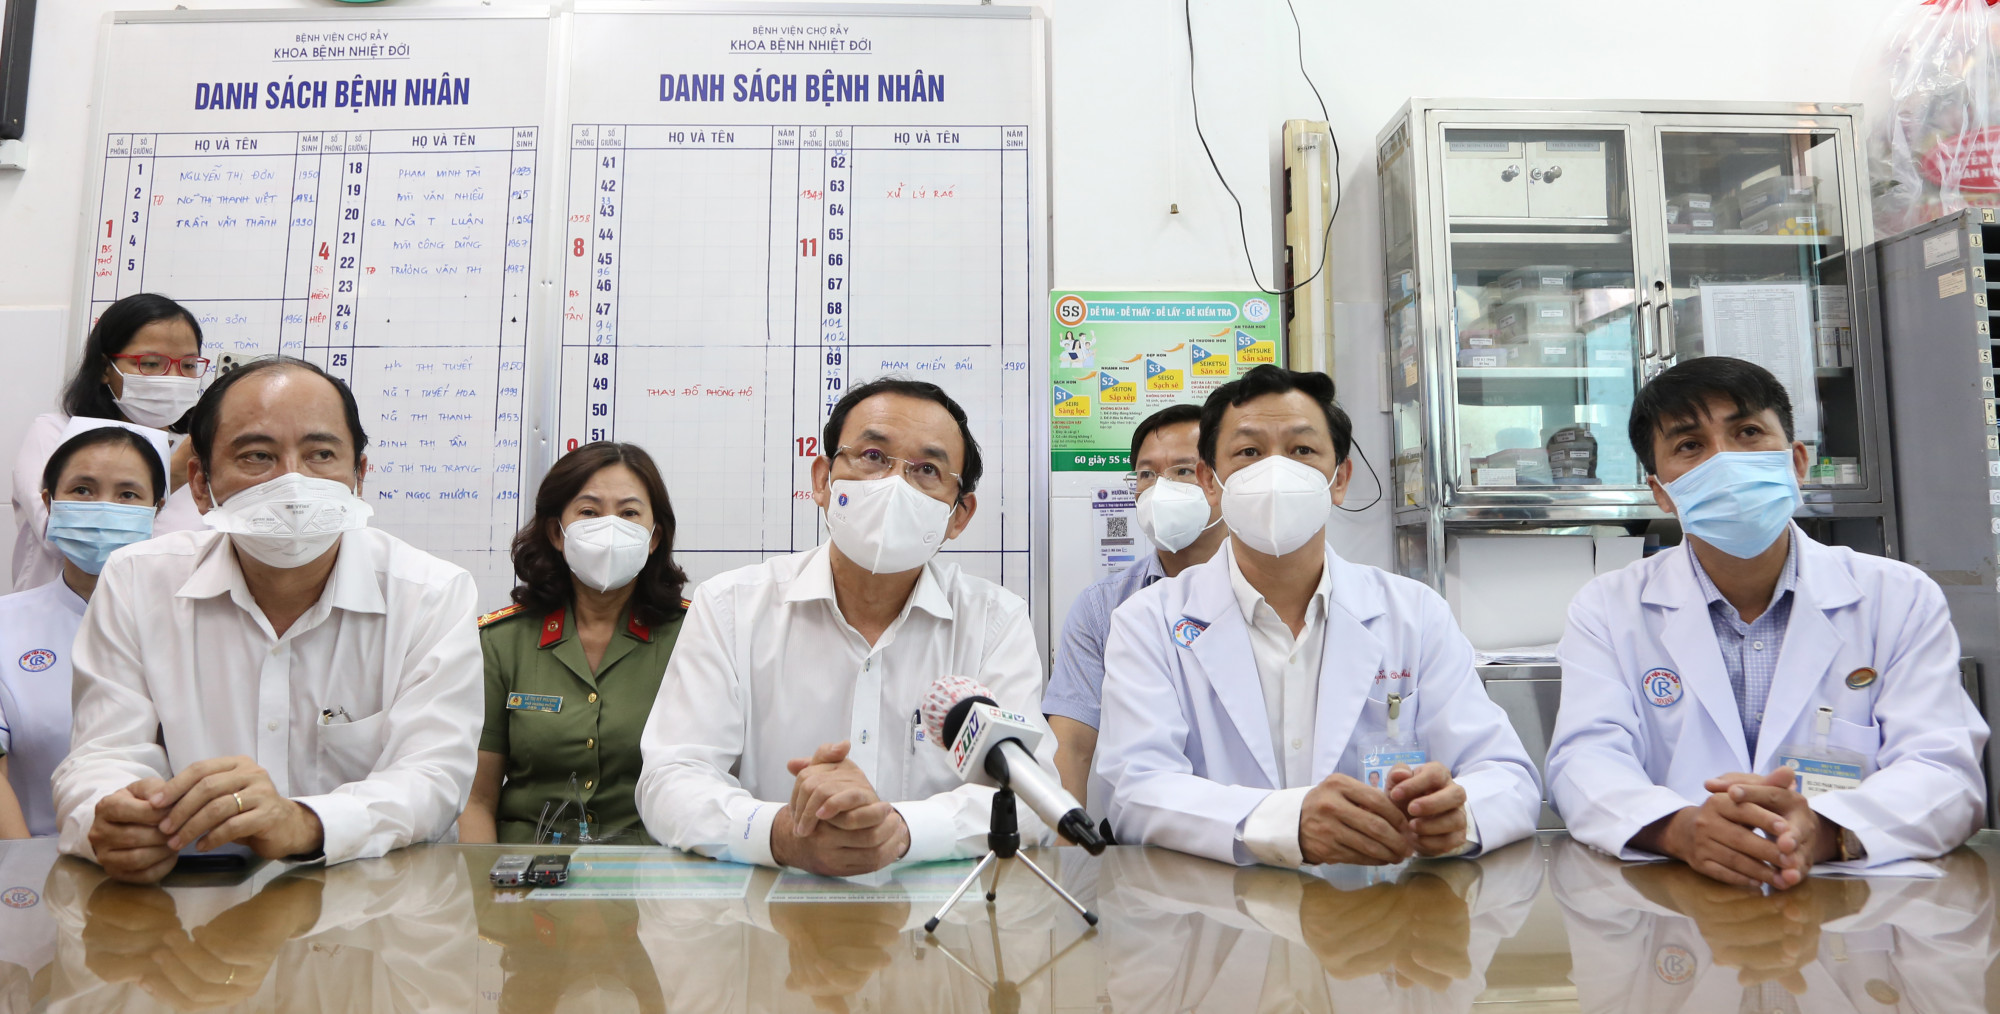 Bí thư Thành ủy TPHCM Nguyễn Văn Nên đến BV Chợ Rẫy chiều 8/6 để thăm hỏi sức khỏe chiến sĩ công an bị nhiễm COVID-19. Ảnh: BVCC